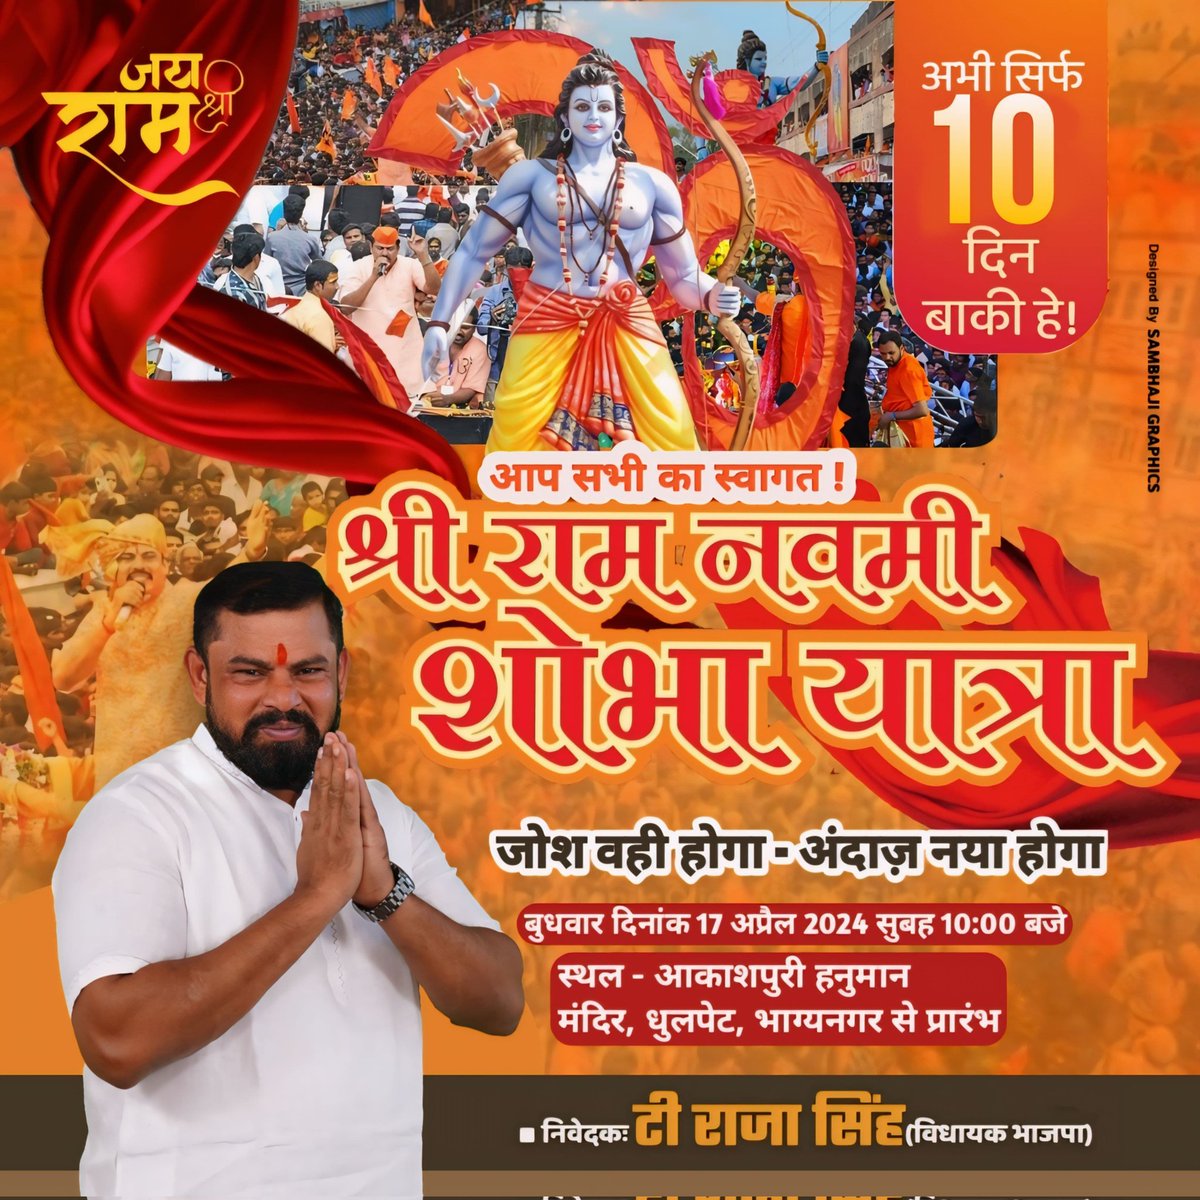 सिर्फ 10 दिन बाकी हे!

श्री राम नवमी विशाल शोभायात्रा 

🗓 बुधवार, 17 अप्रैल 2024
🕑 सुबह 10:00 बजे
📍 स्थल आकाशपुरी हनुमान मंदिर, धुलपेट, भाग्यनगर से प्रारंभ

आप सभी का स्वागत है।

जय श्री राम 🚩 🚩 🚩 
#SriRamNavami